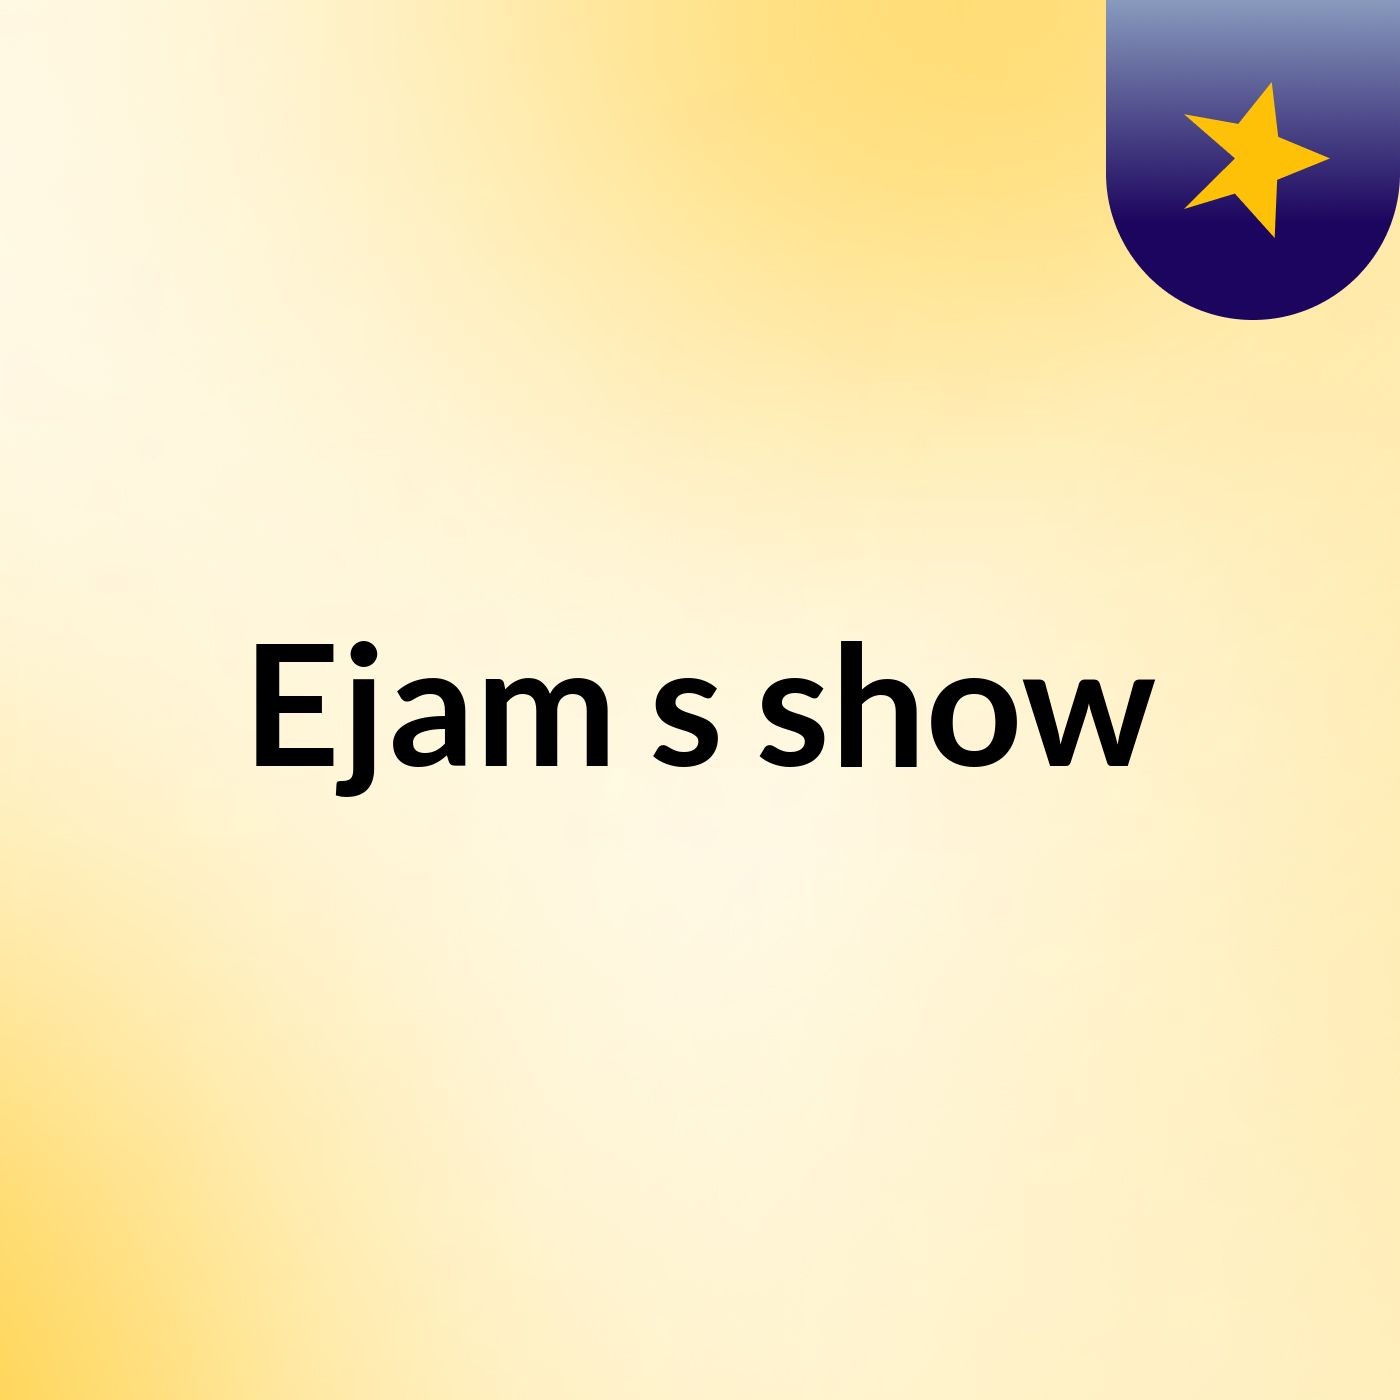 Ejam's show